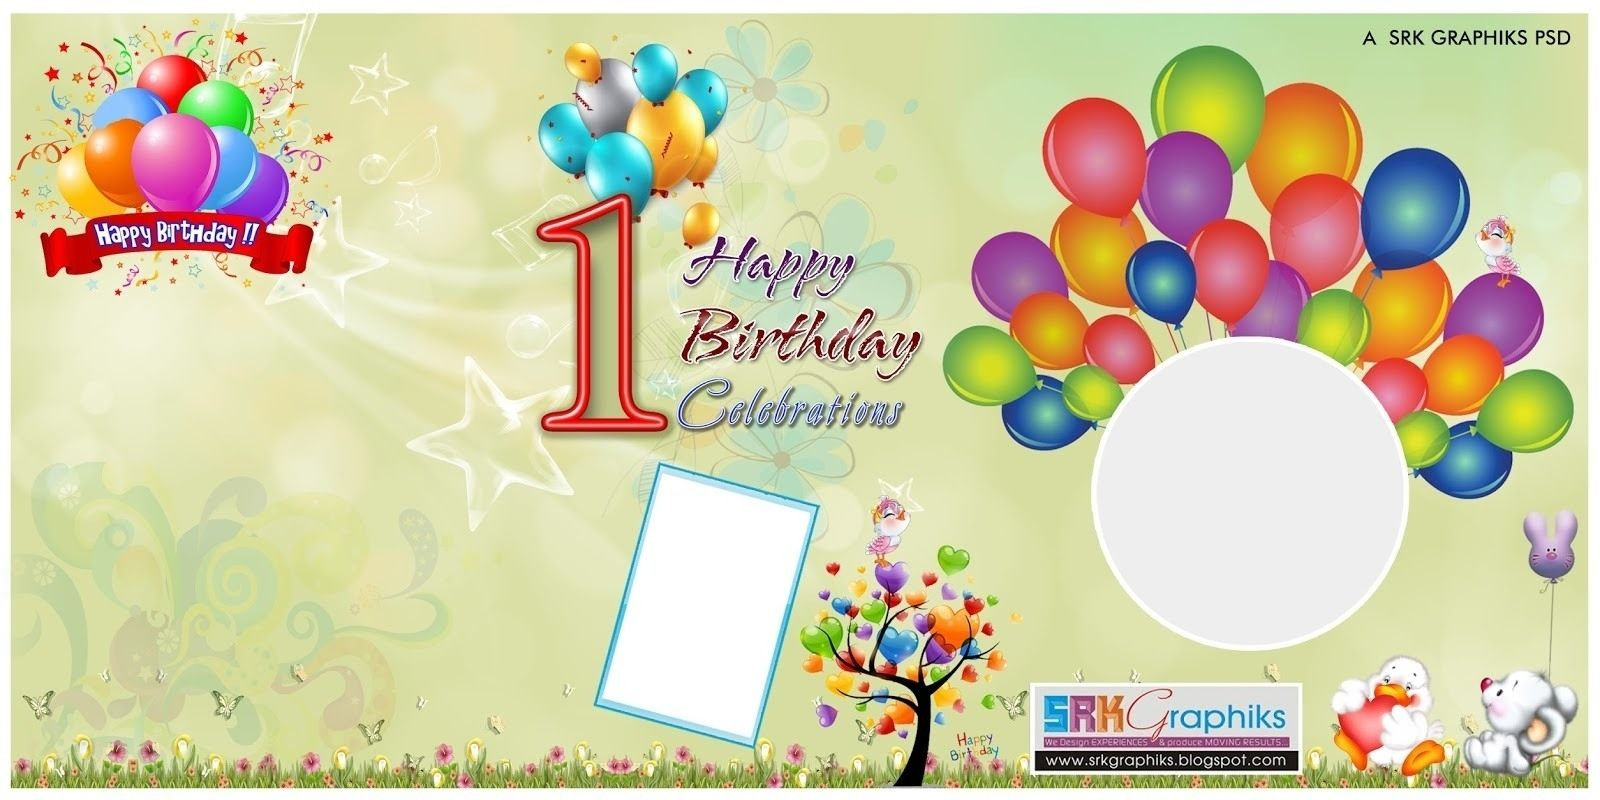 Birthday Flex Banner Design Psd Template Free Downloads In Free Happy Birthday Banner Templates Download